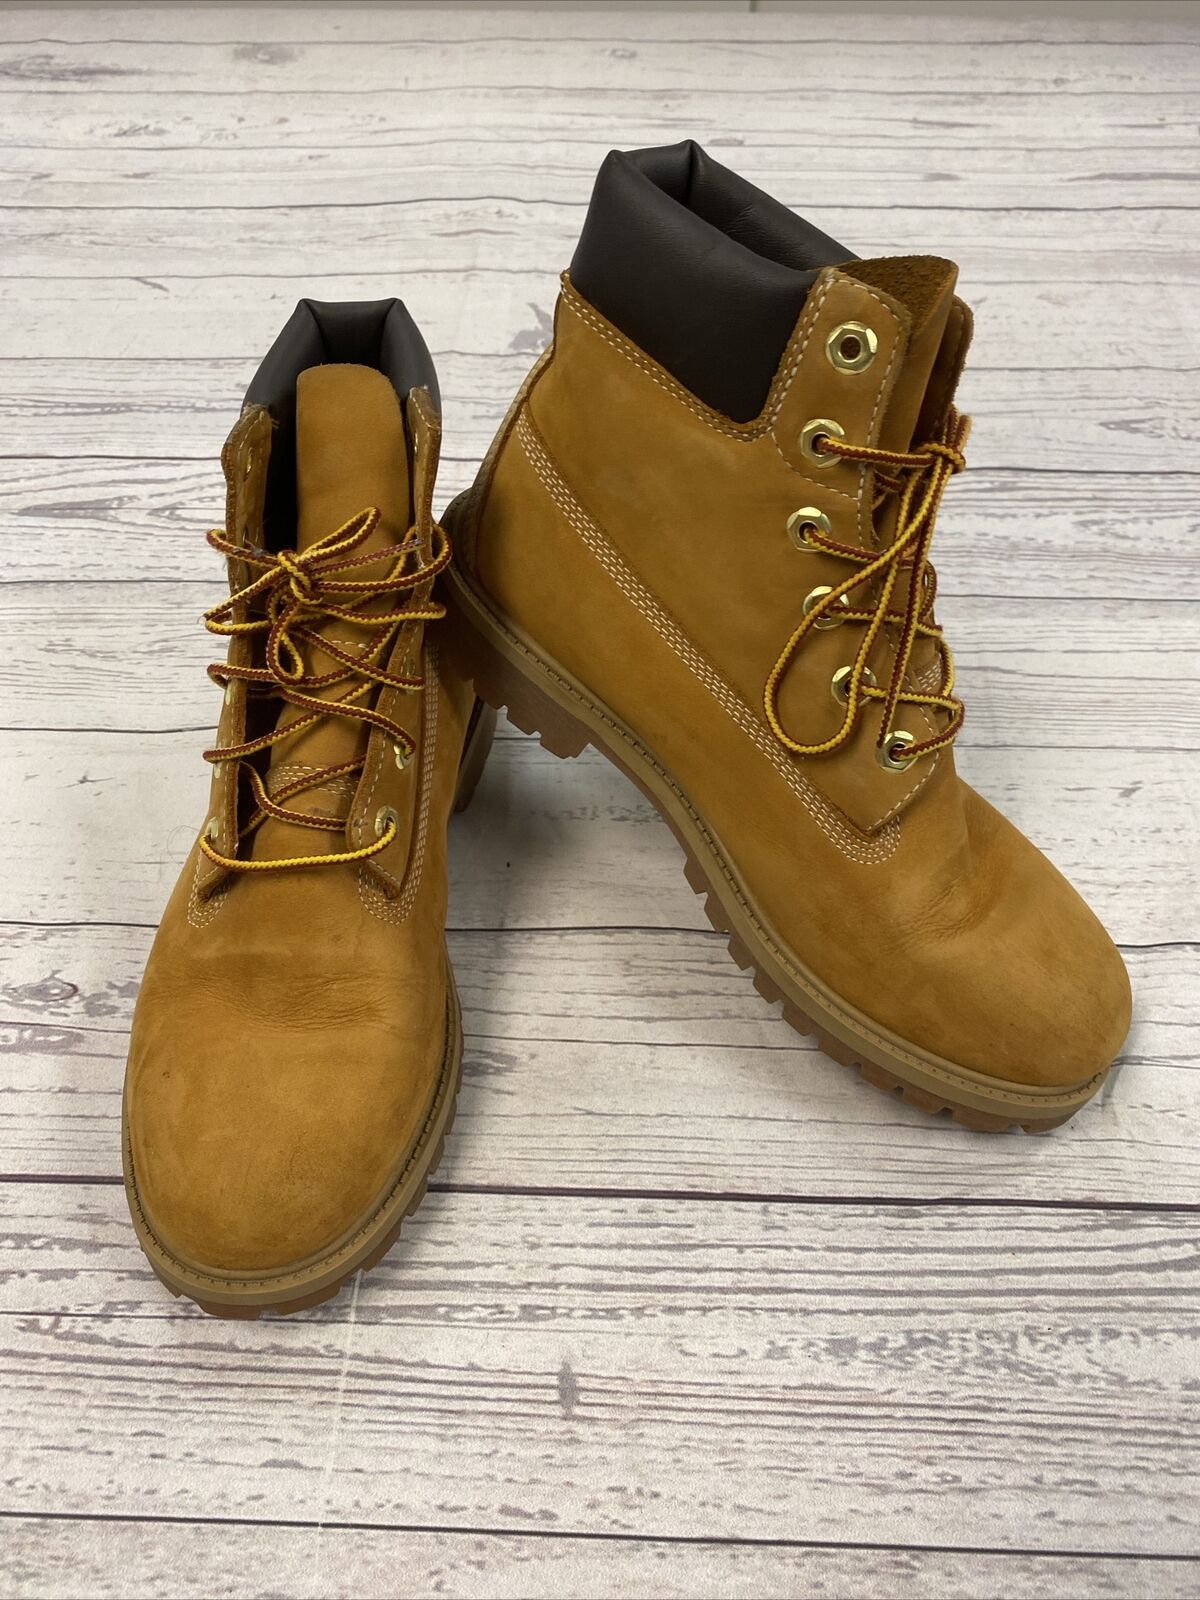 Timberland 12909 Junior’s 6" Premium Waterproof Boots Wheat Nubuck Size 7